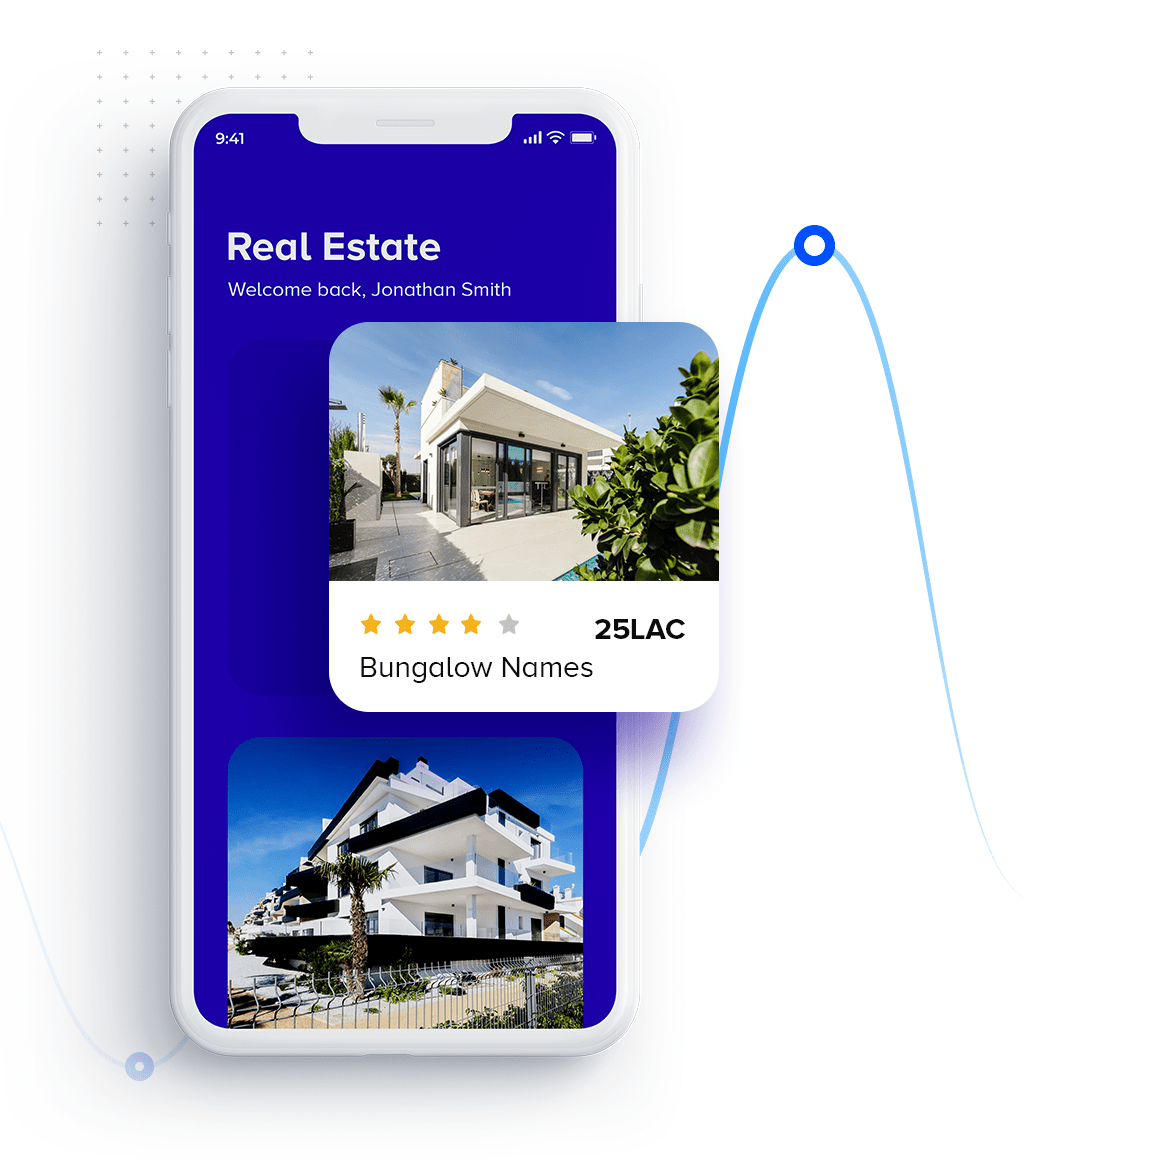 Real estate App Development by MaanTech